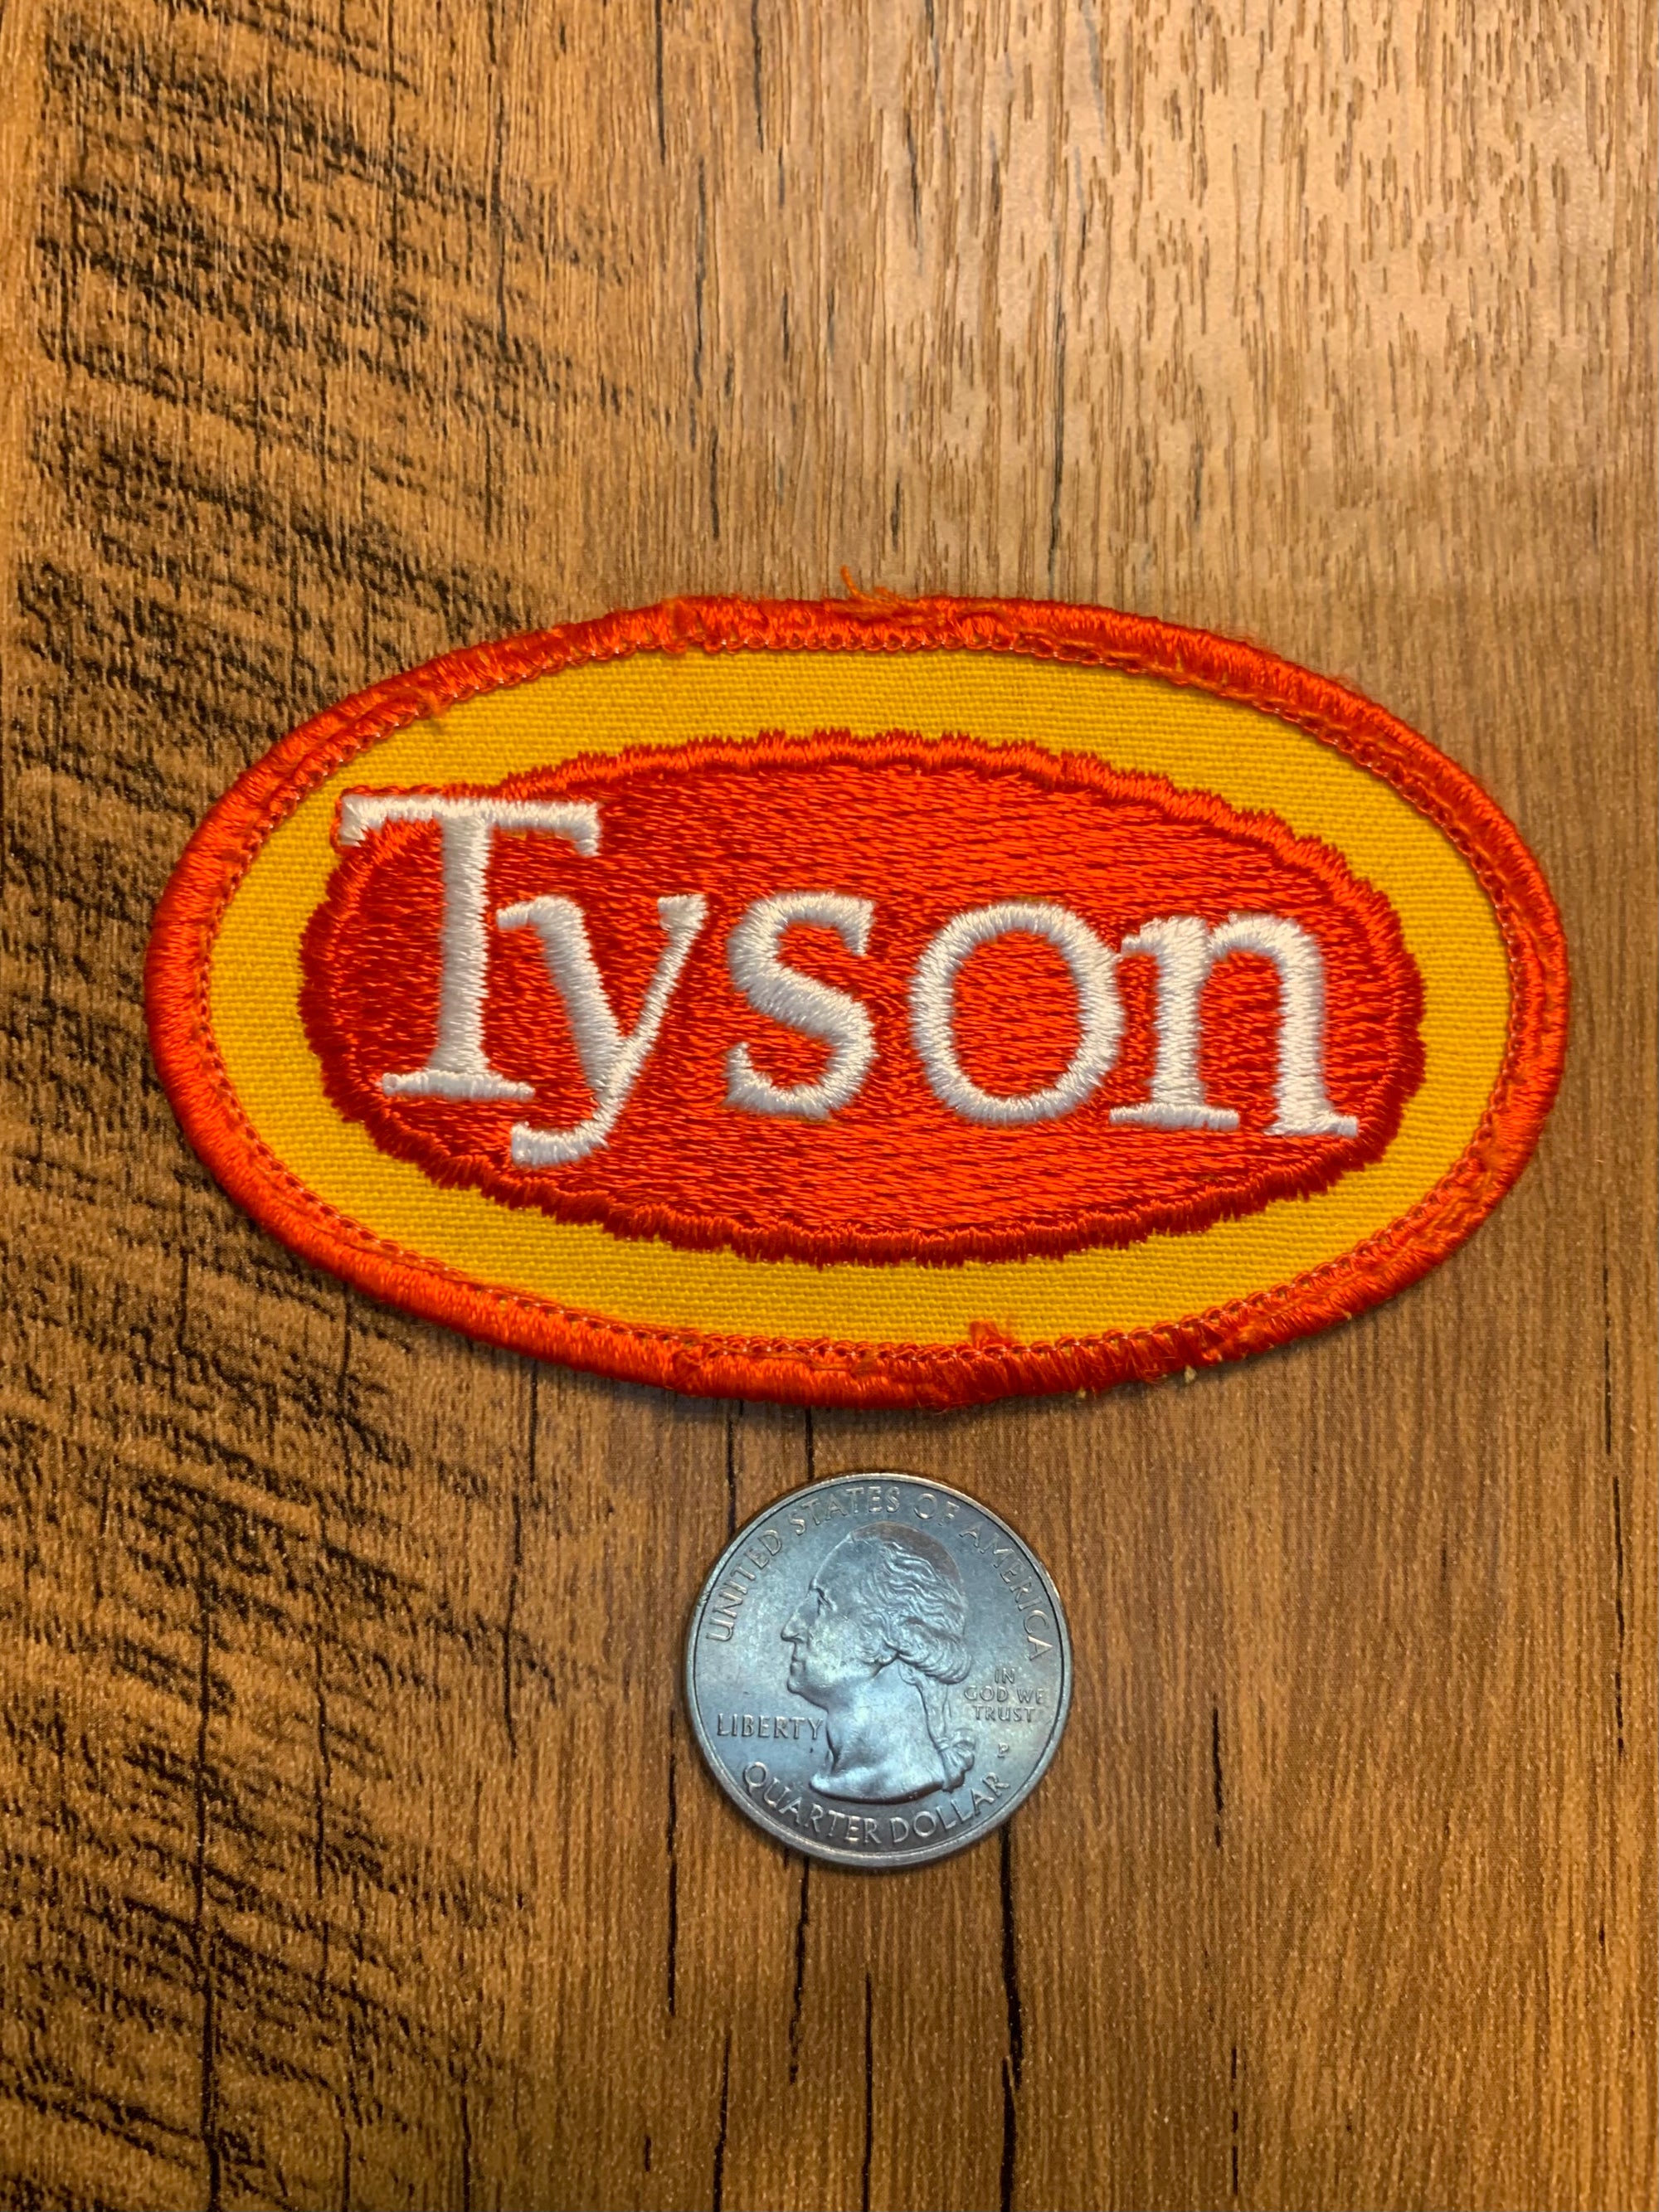 Vintage Tyson